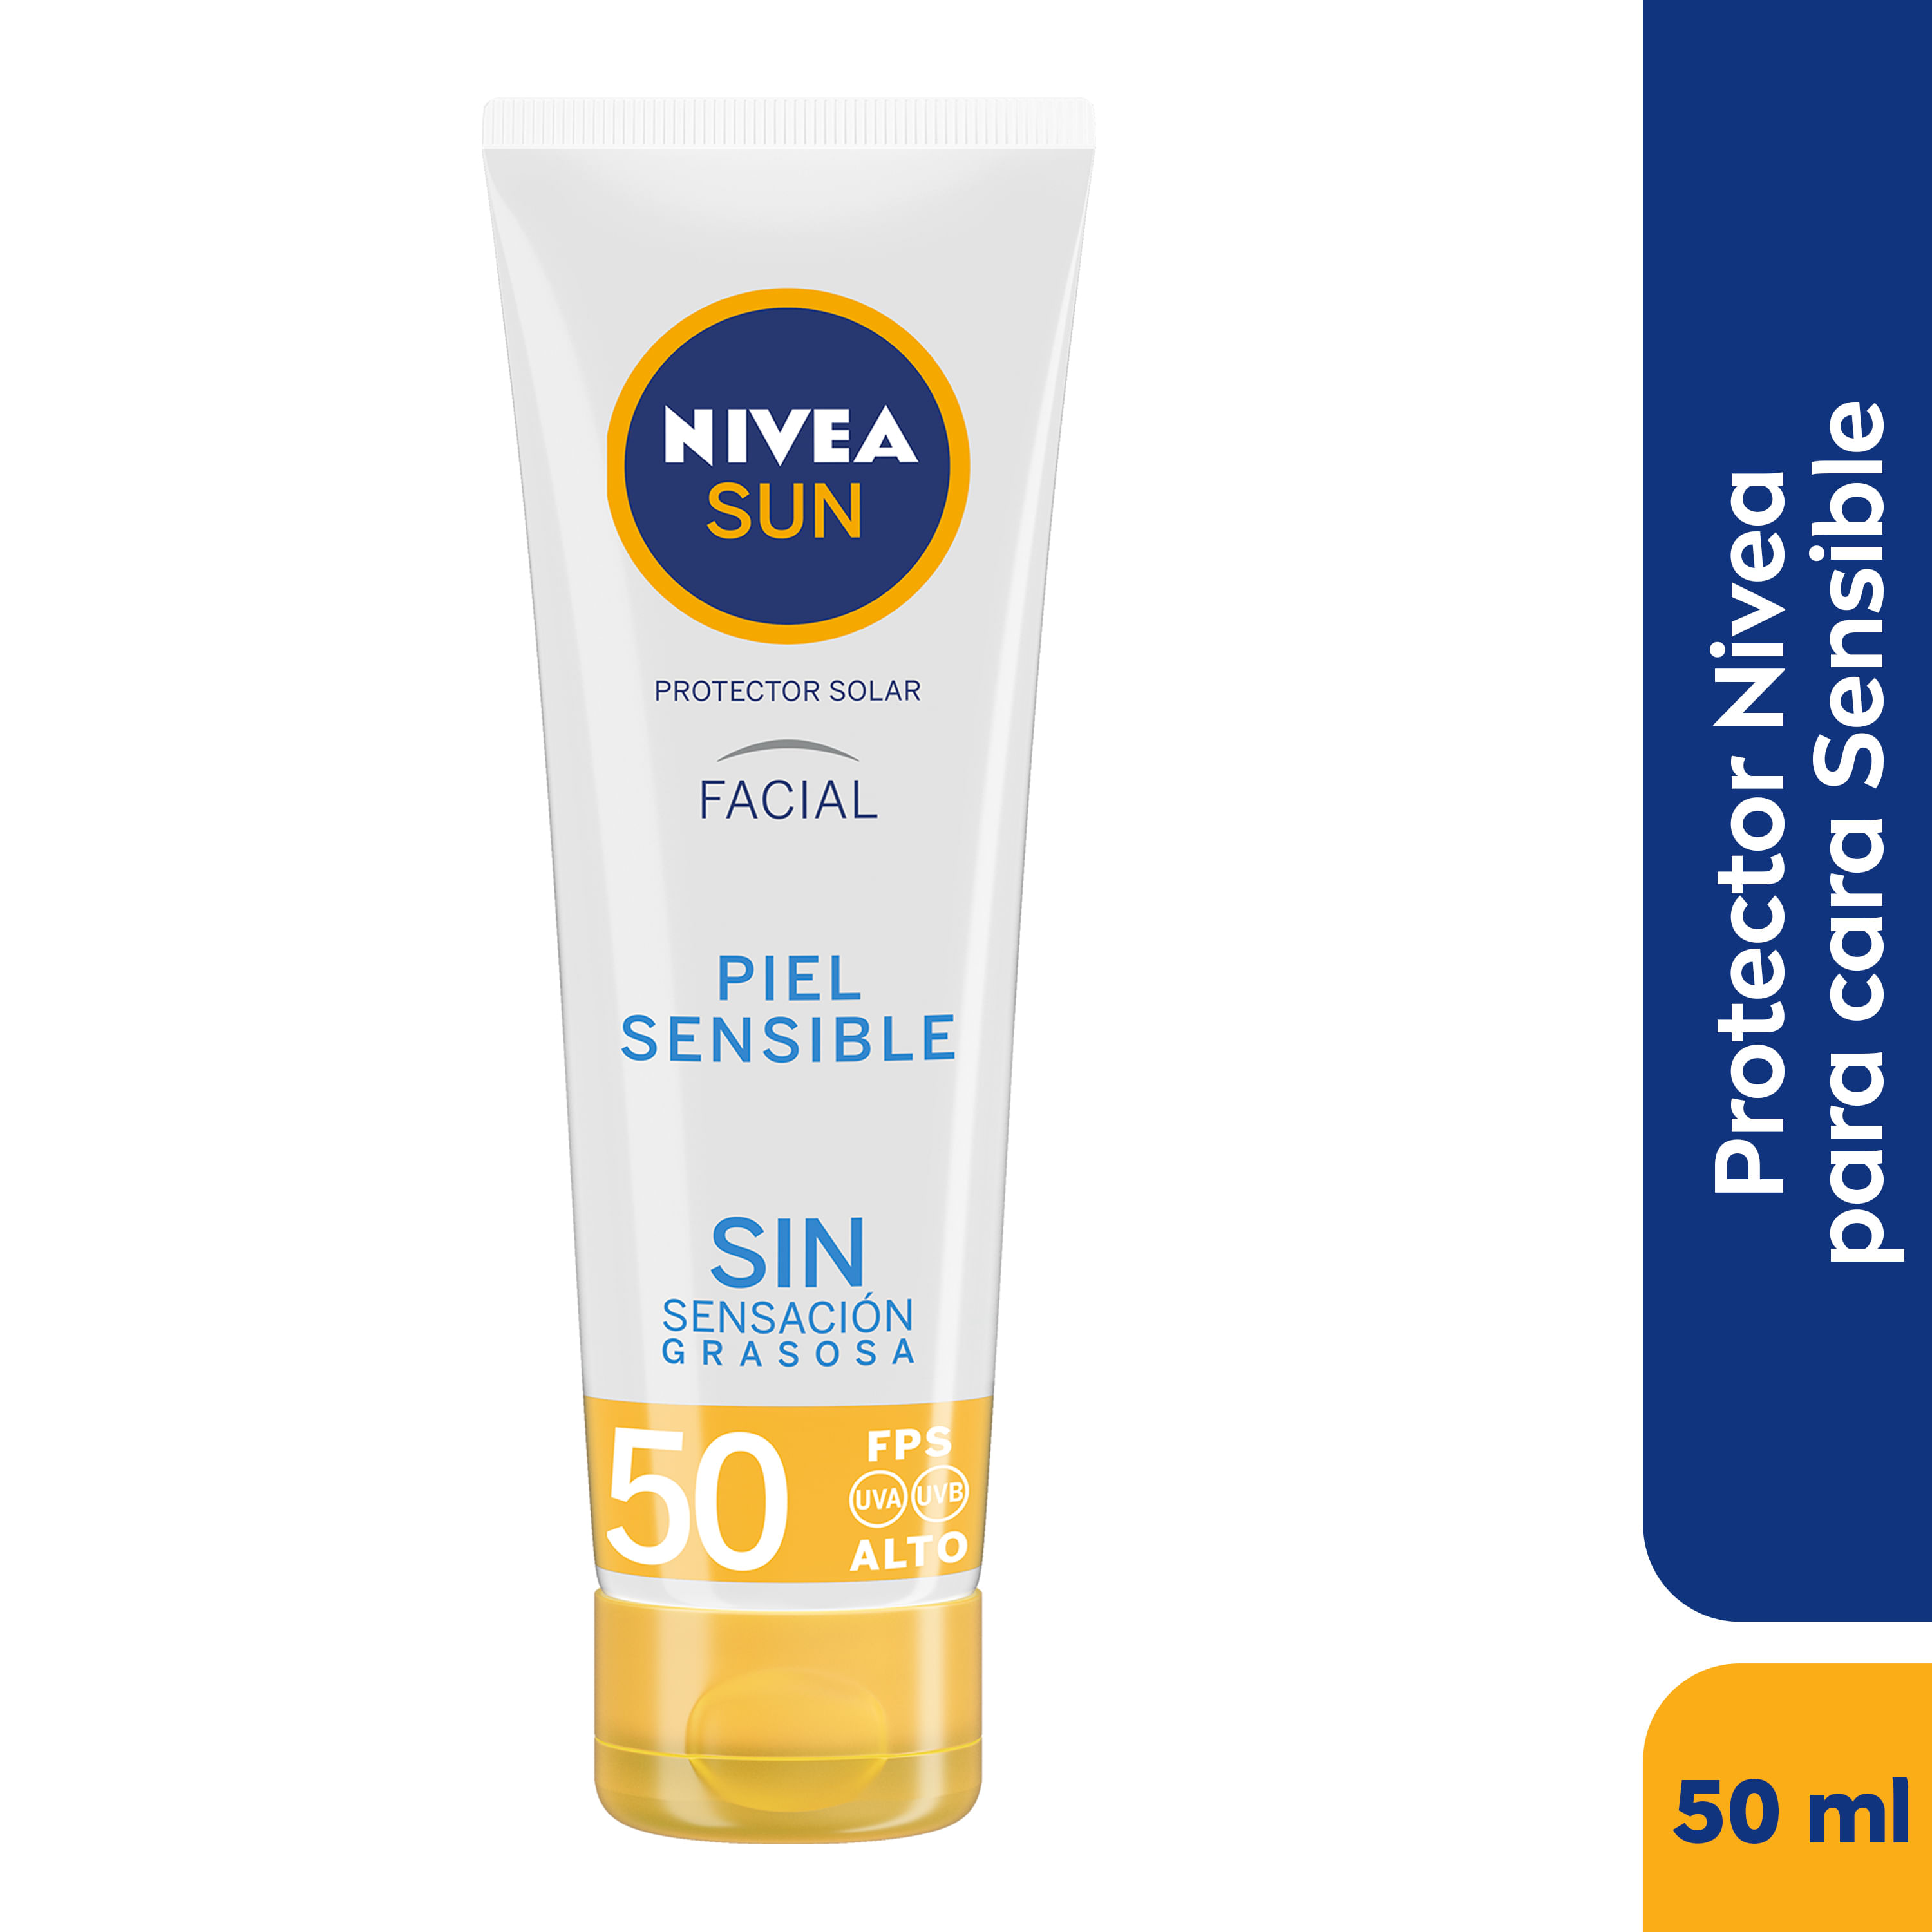 Protector Solar Facial NIVEA Triple protección FP50+ precio